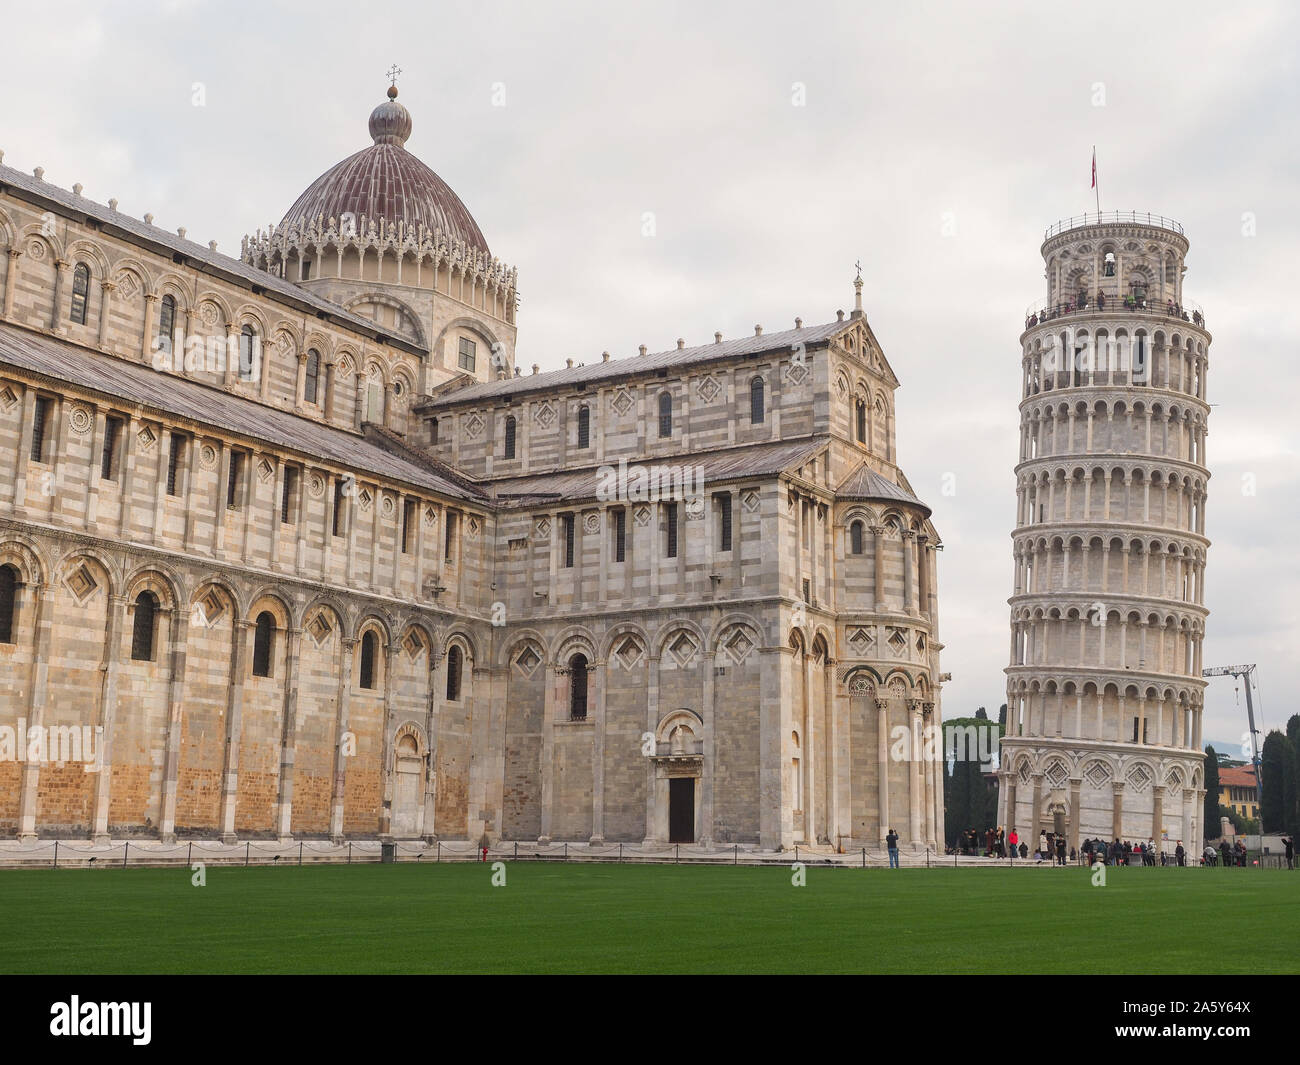 Famosa Torre campanario independiente de Pisa y la gran Catedral Católica romana medieval, el Duomo di Santa Maria Assunta en la Piazza dei Miracoli Foto de stock